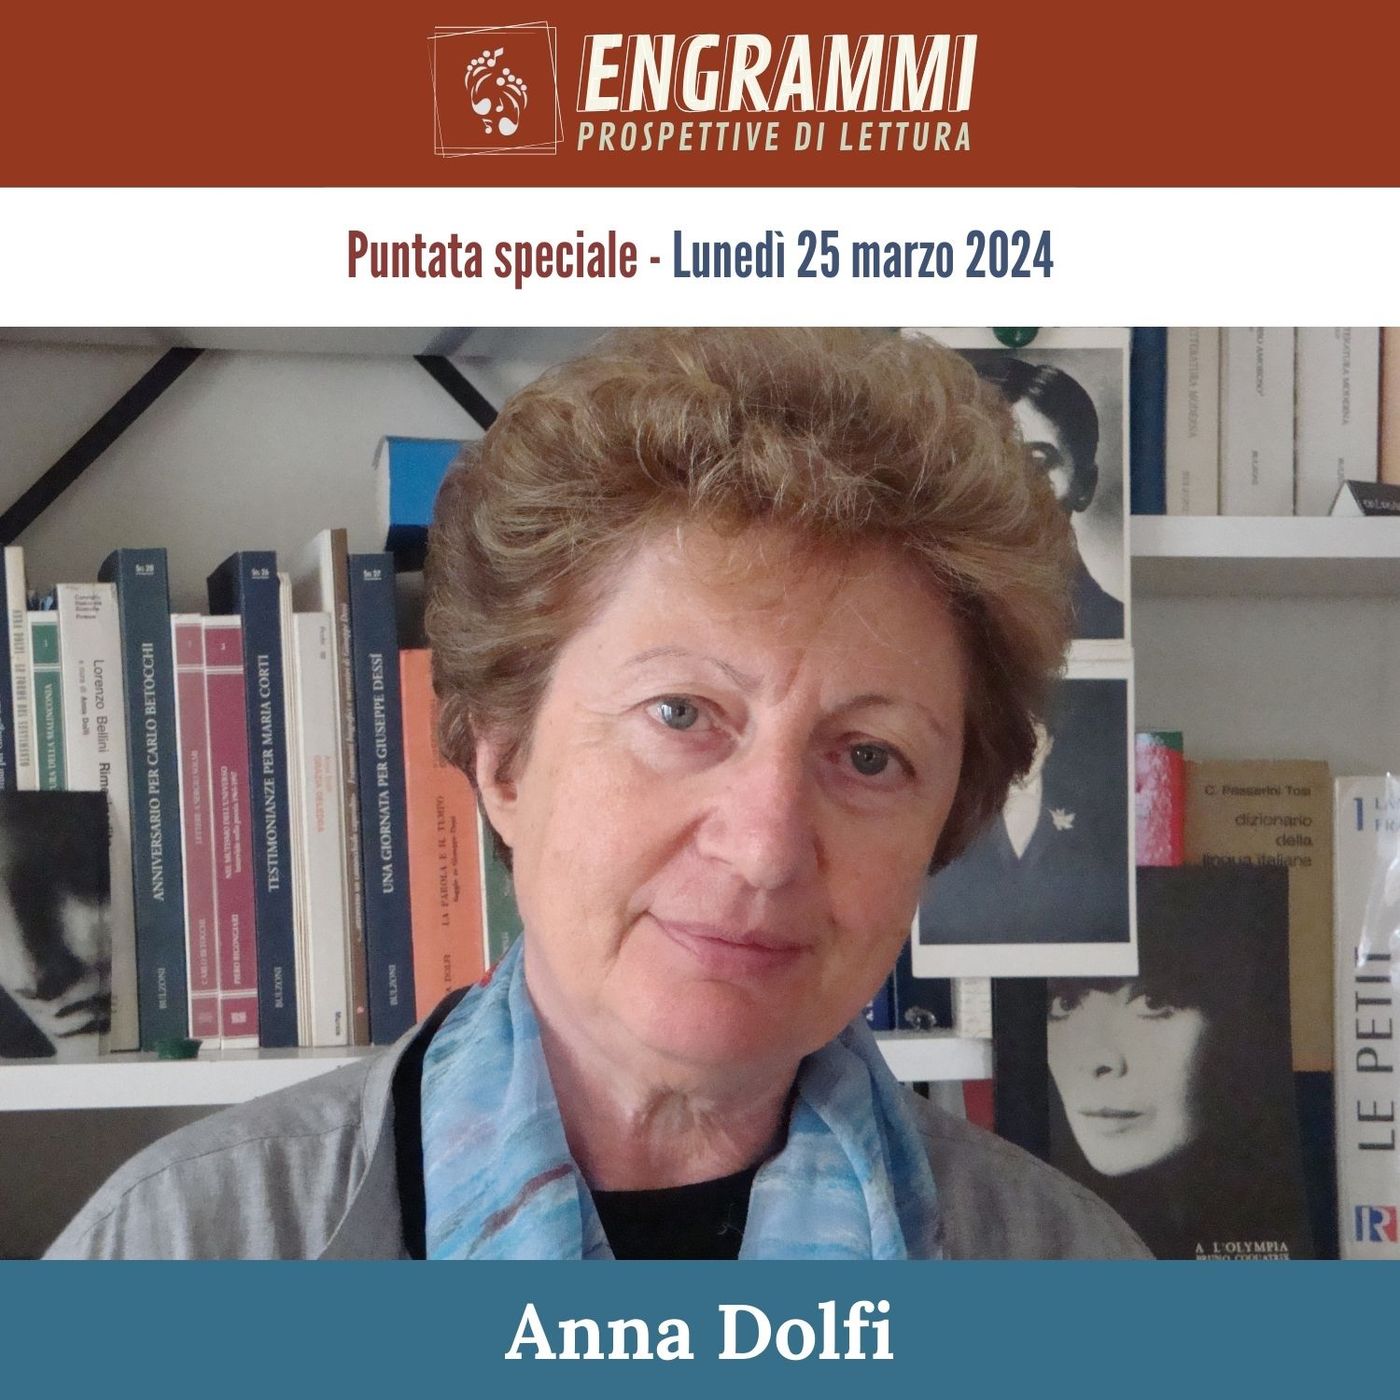 Anna Dolfi vi invita alla PUNTATA SPECIALE di lunedì 25 marzo